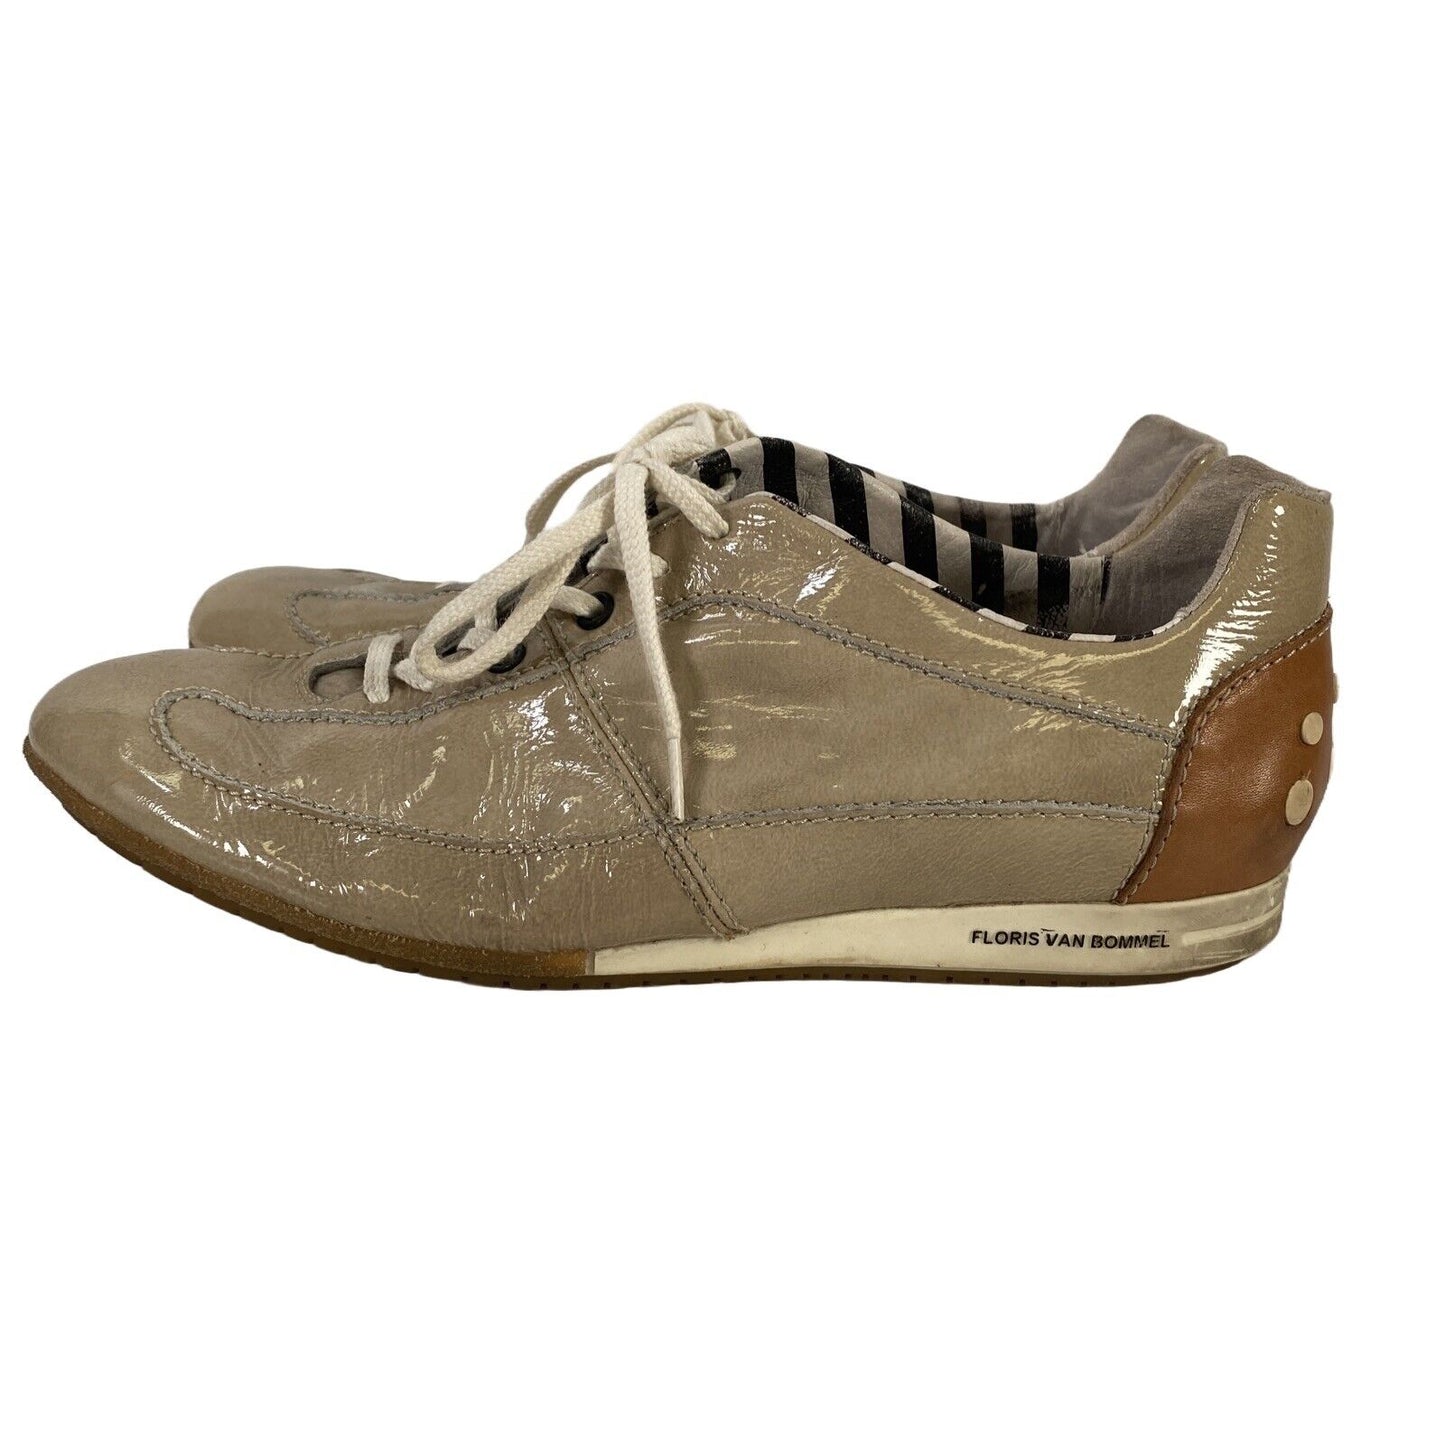 Floris Van Bommel Women's Beige Leather Lace Up Sneakers Shoes - 38